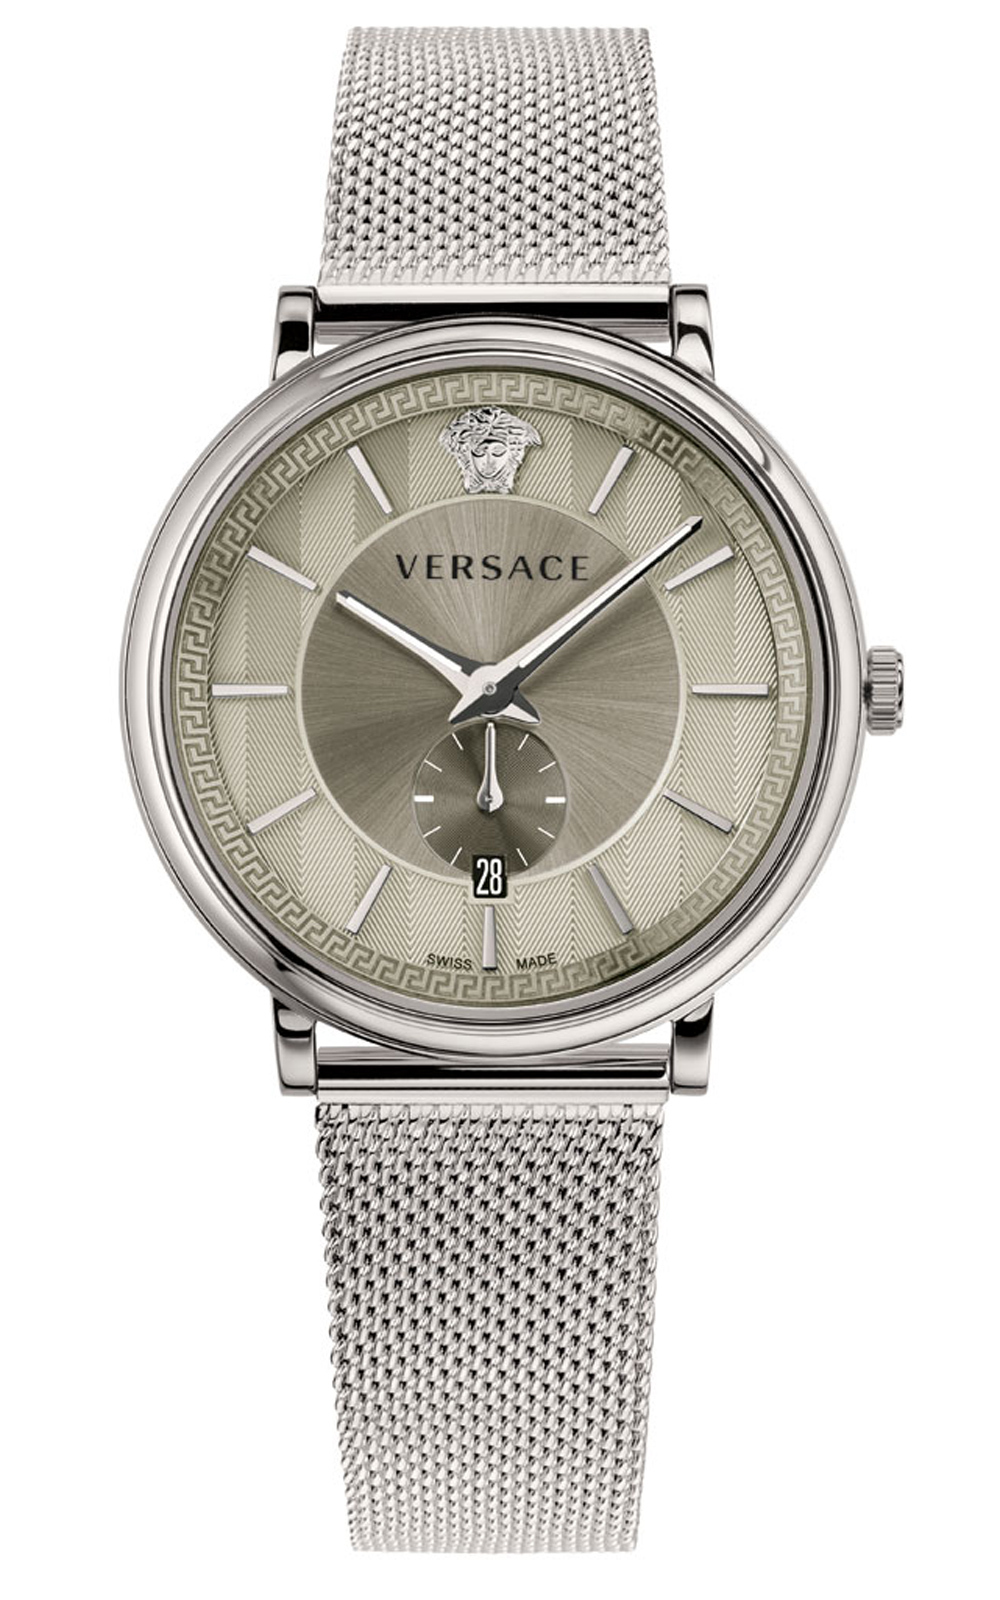 Đồng hồ nam Versace VBQ060017